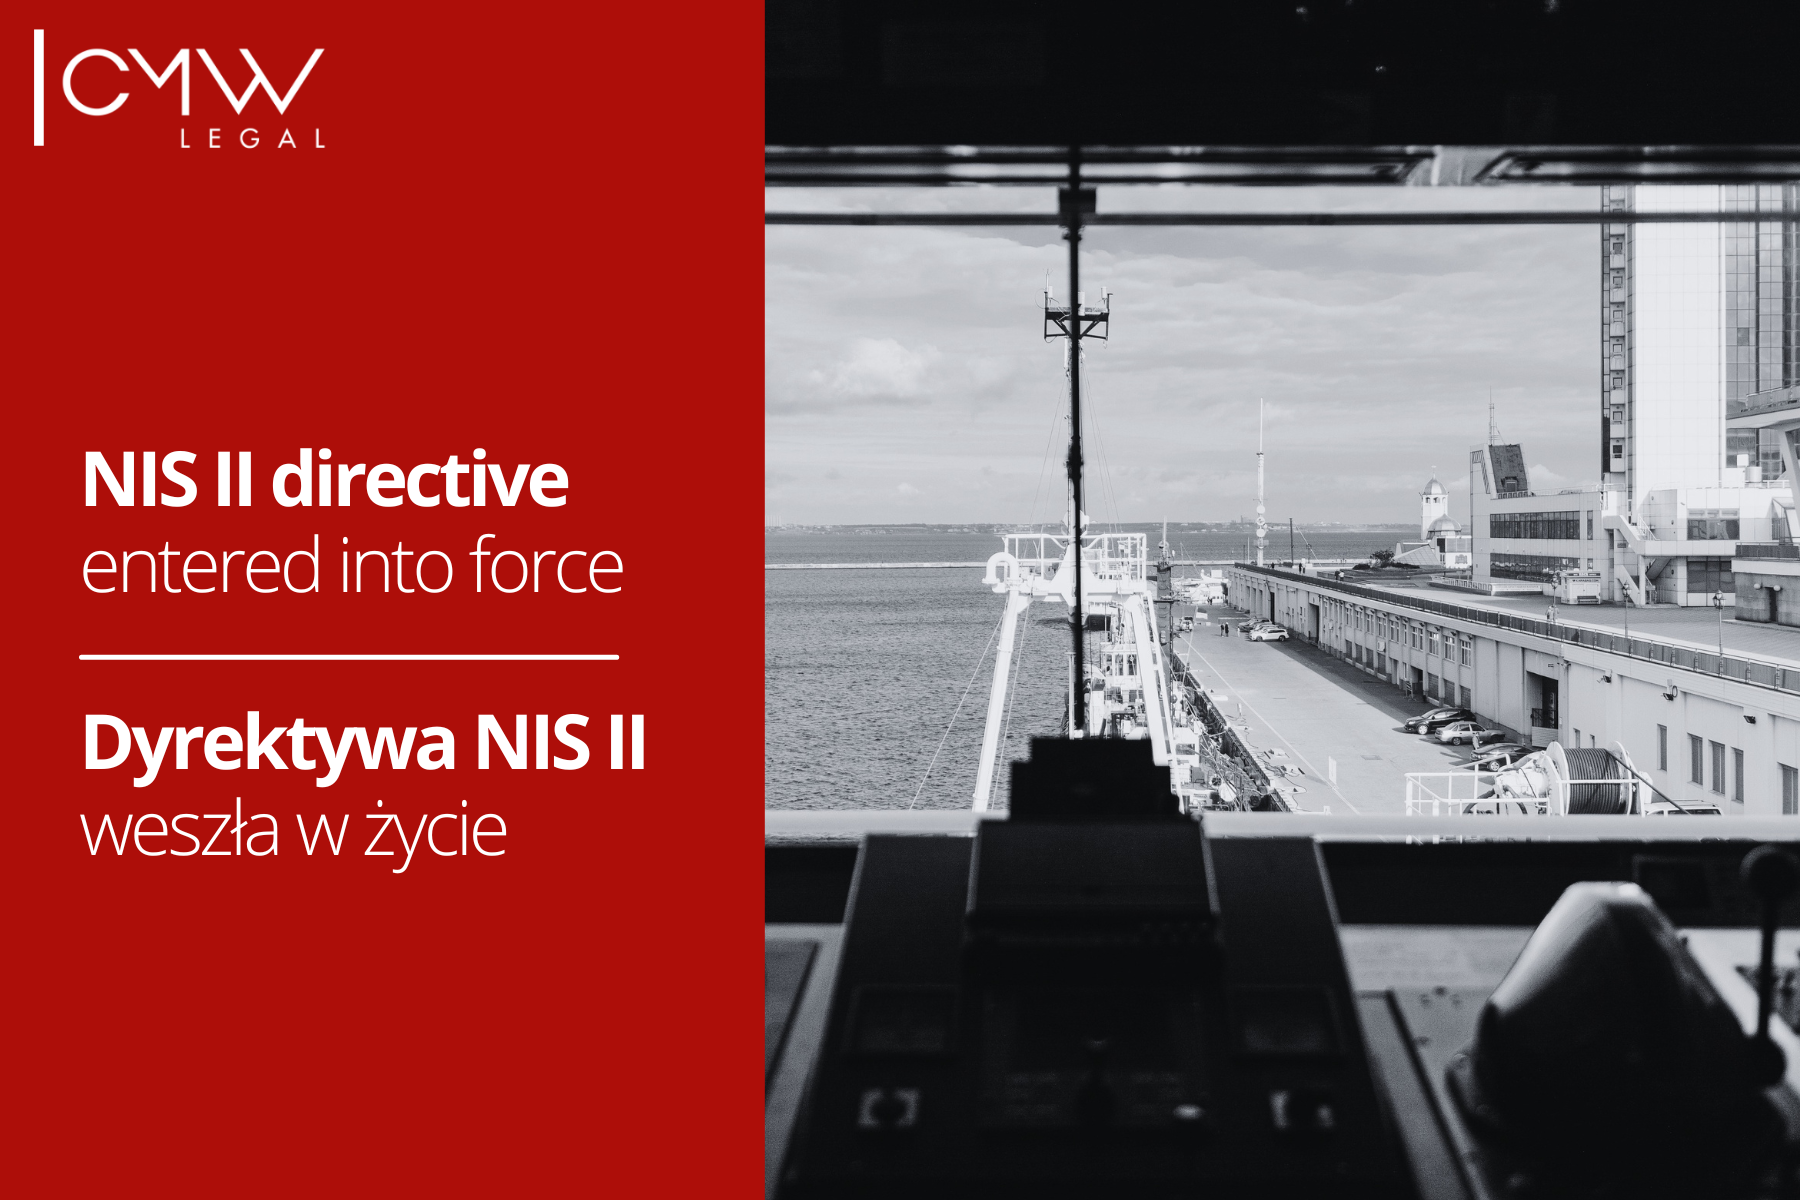  Dyrektywa NIS II opublikowana